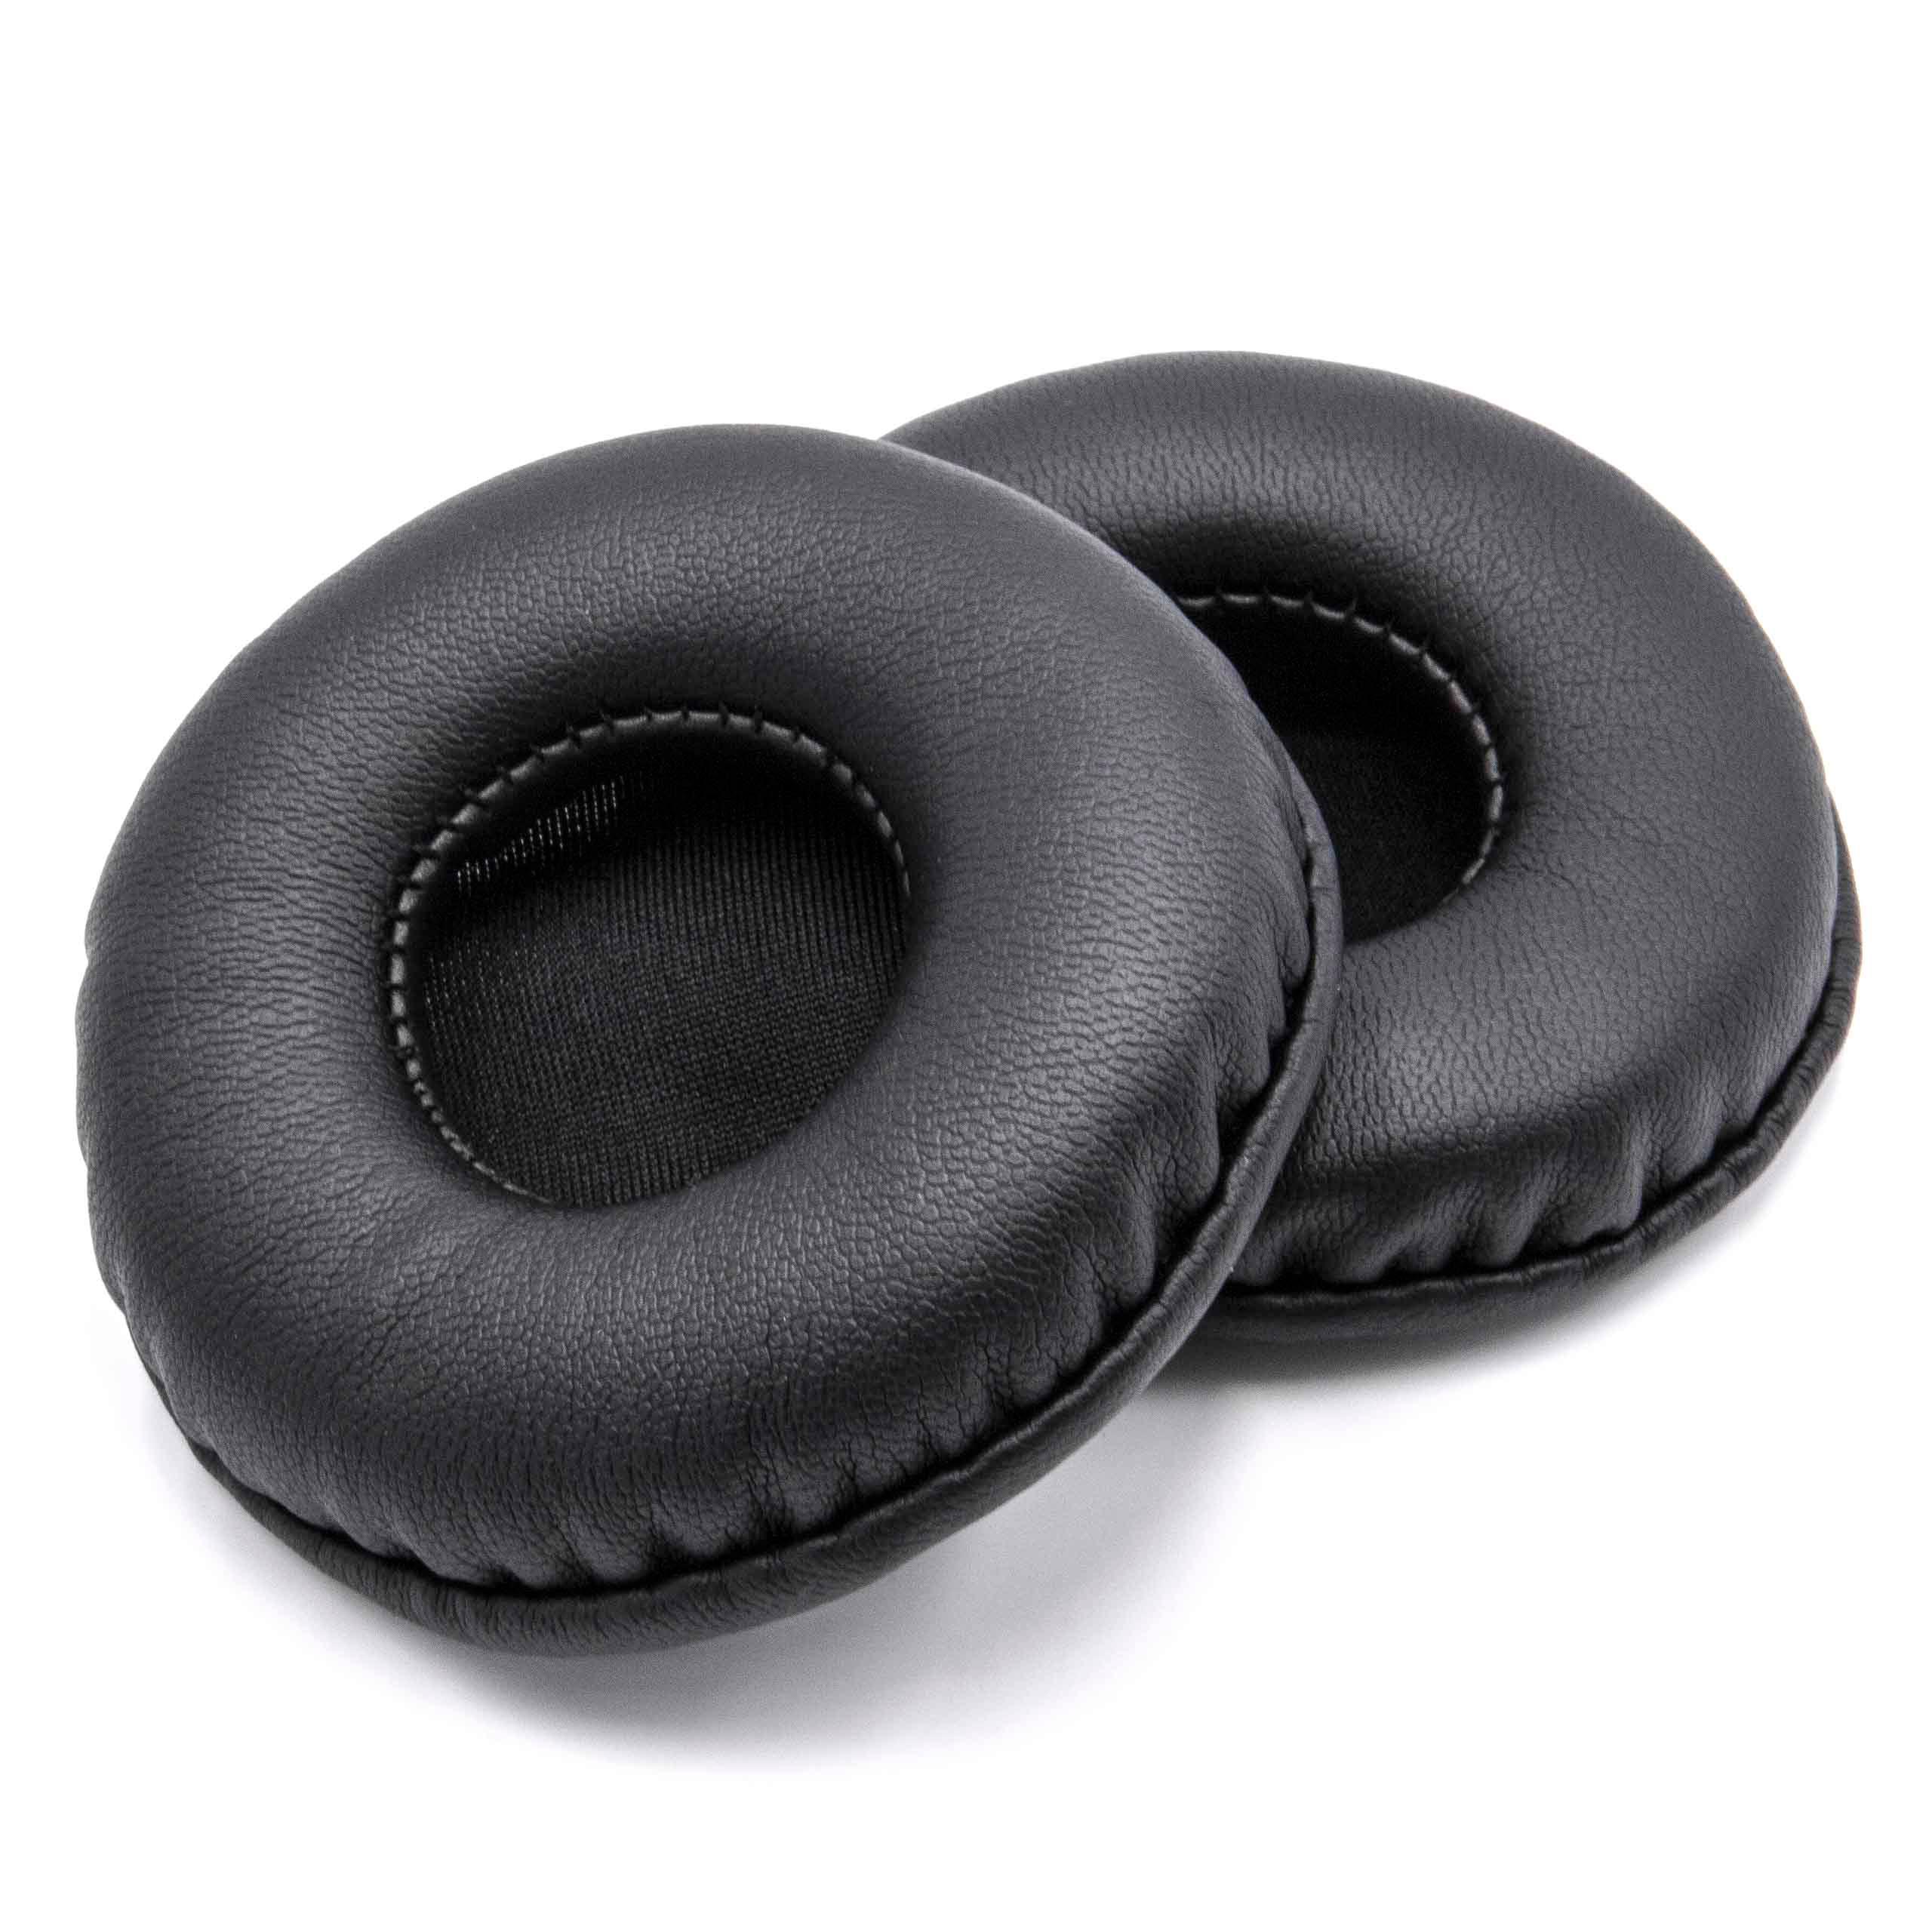 2x 1 paio di cuscinetti - poliuretano, 7 cm diametro esterno, nero